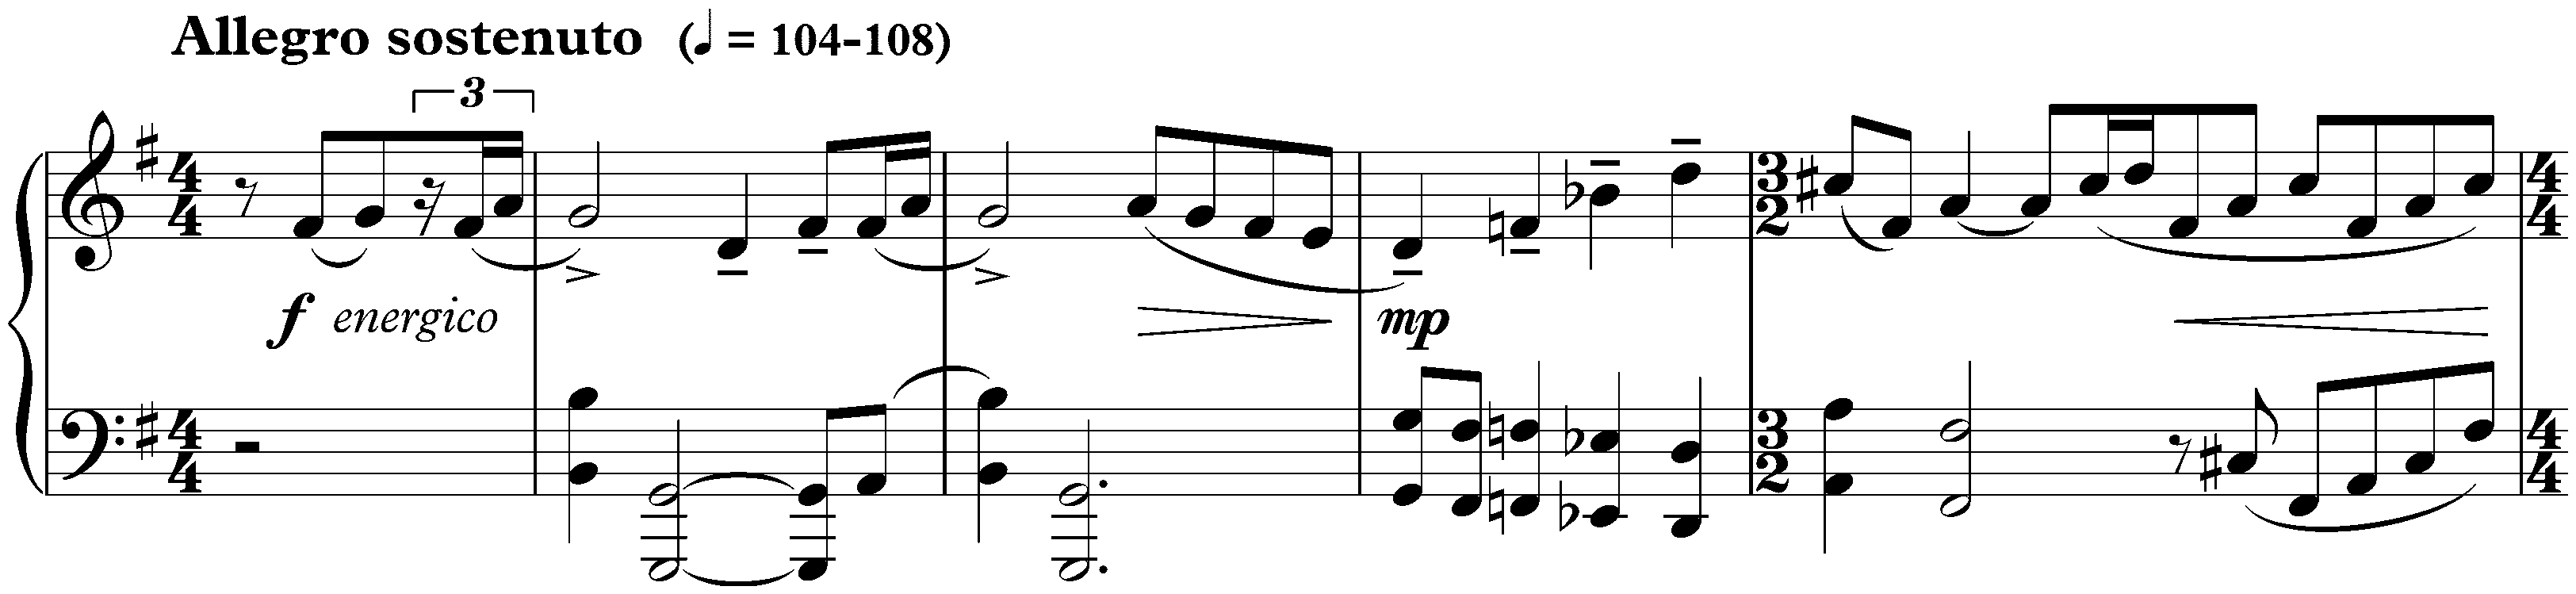 Sonatina in G major, op. 54 no. 2; 1. Allegro sostenuto